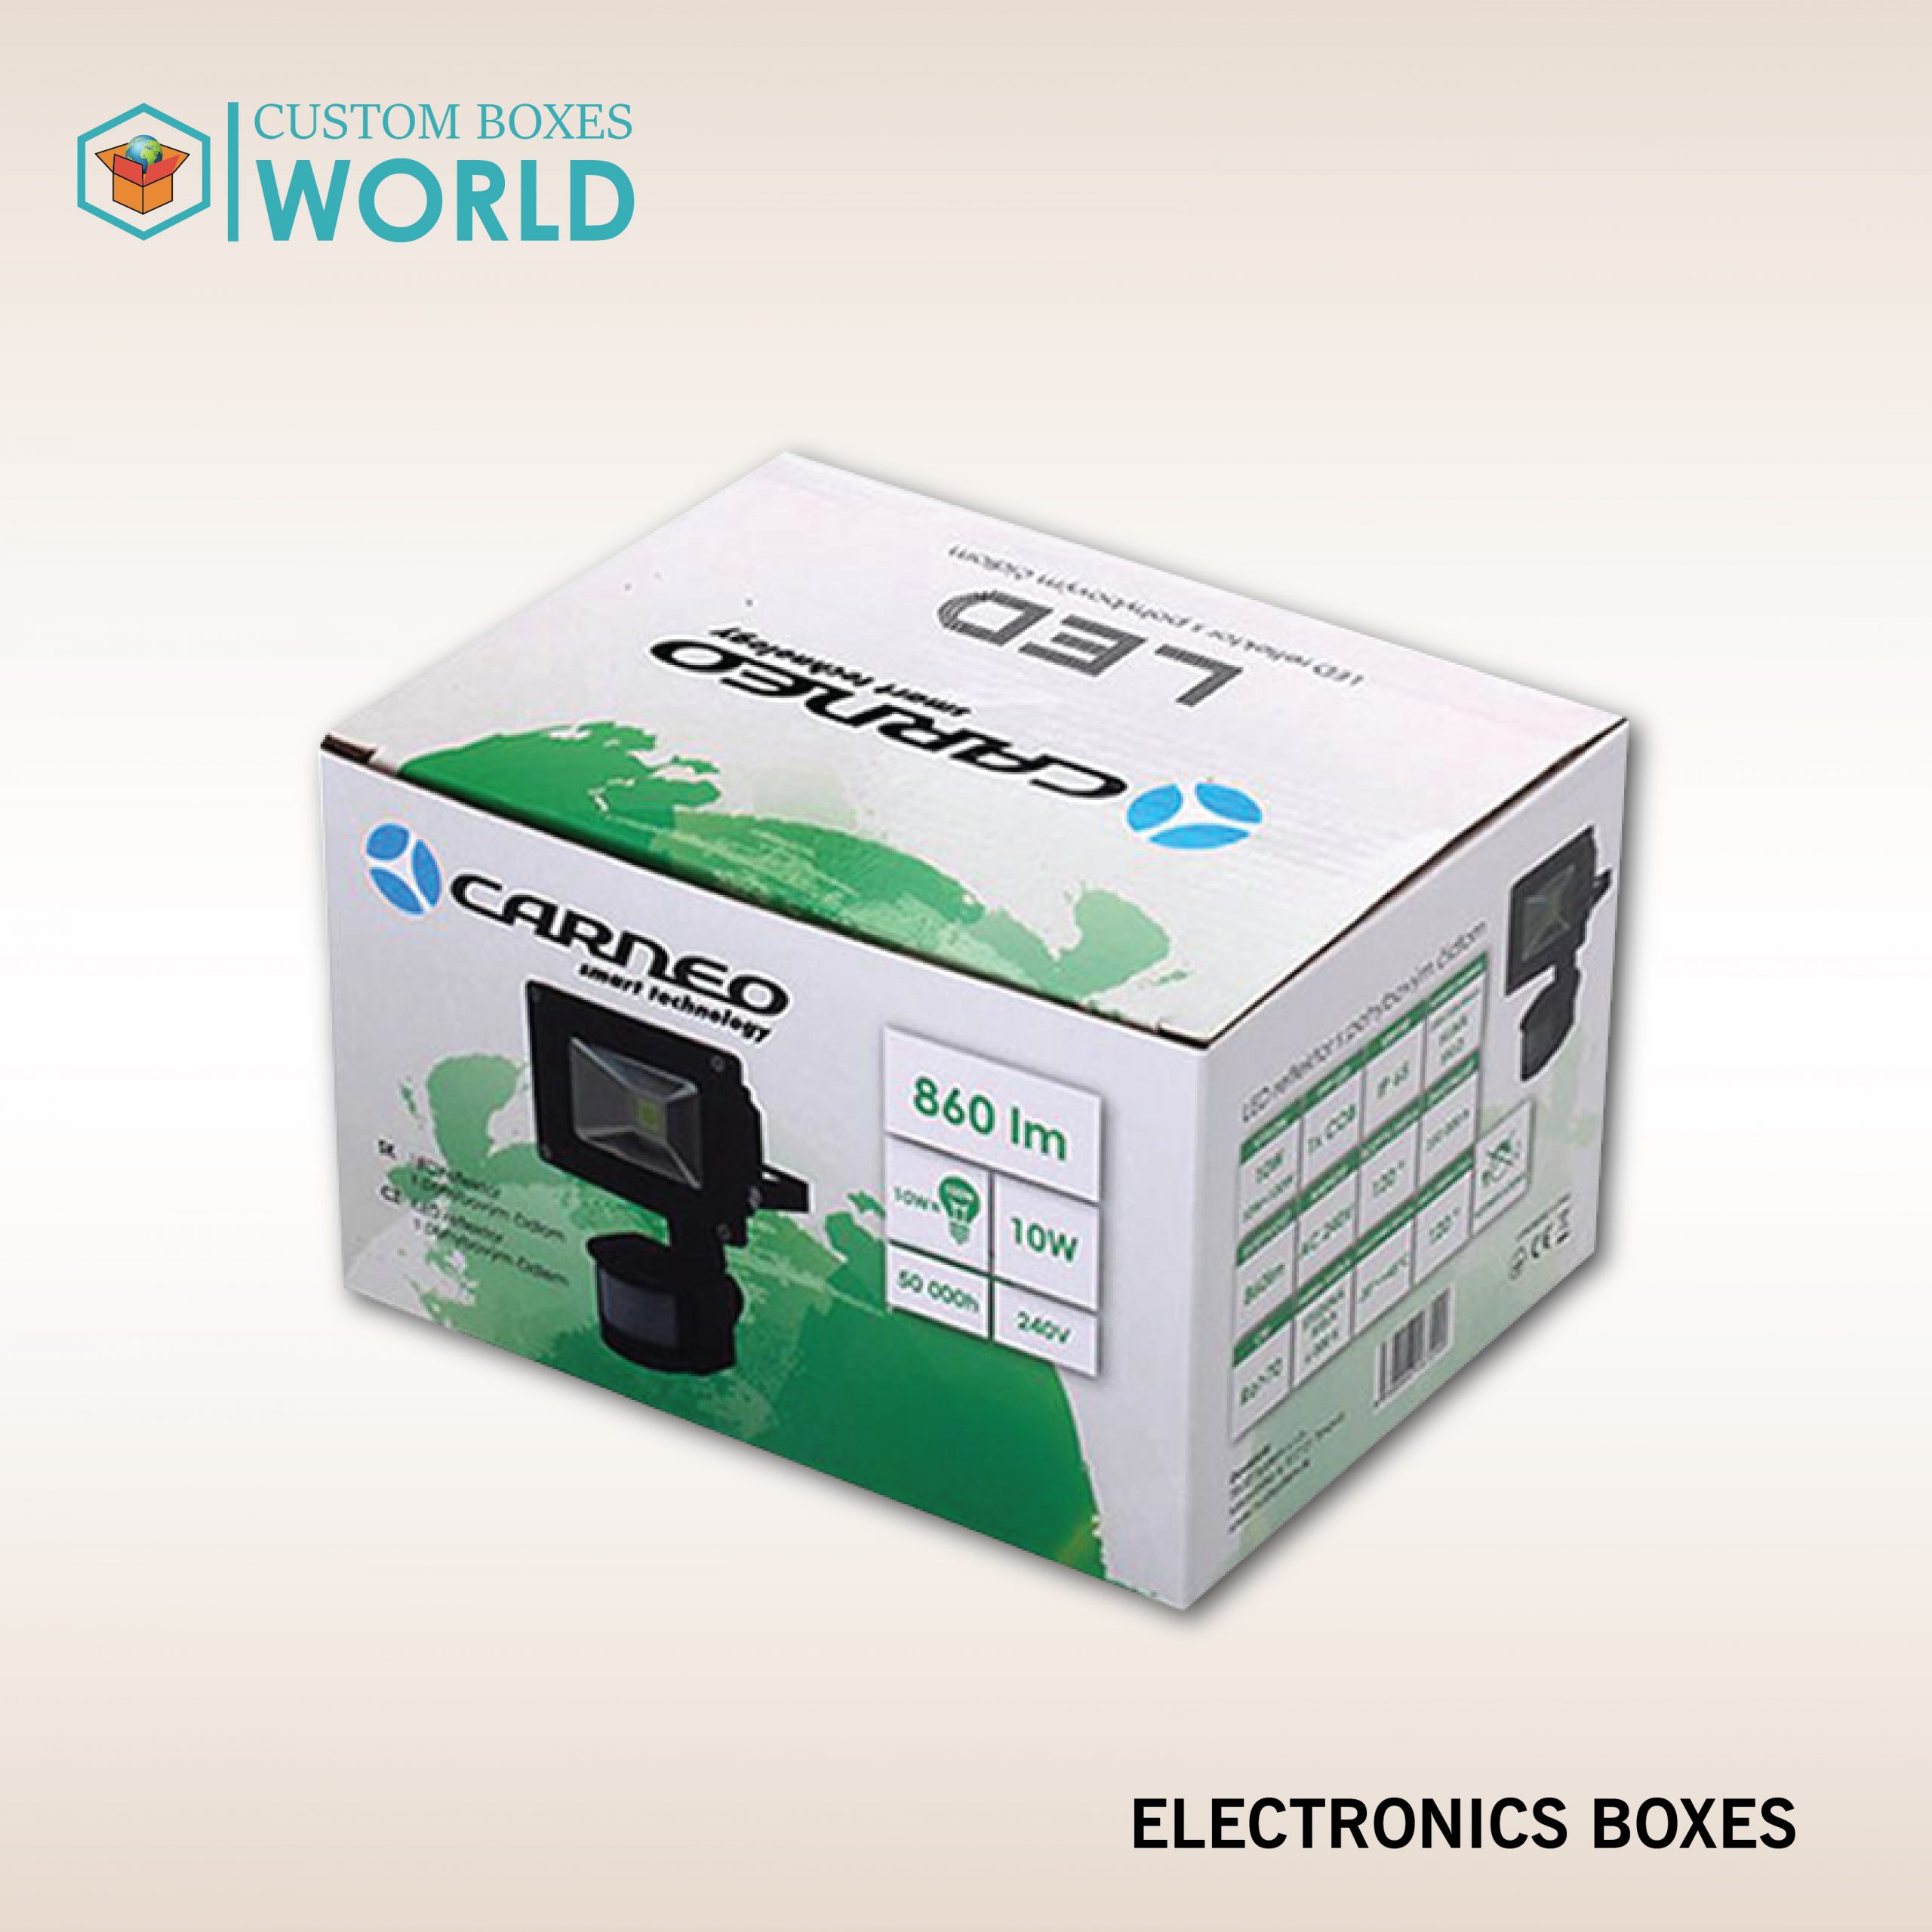 Electronics Boxes